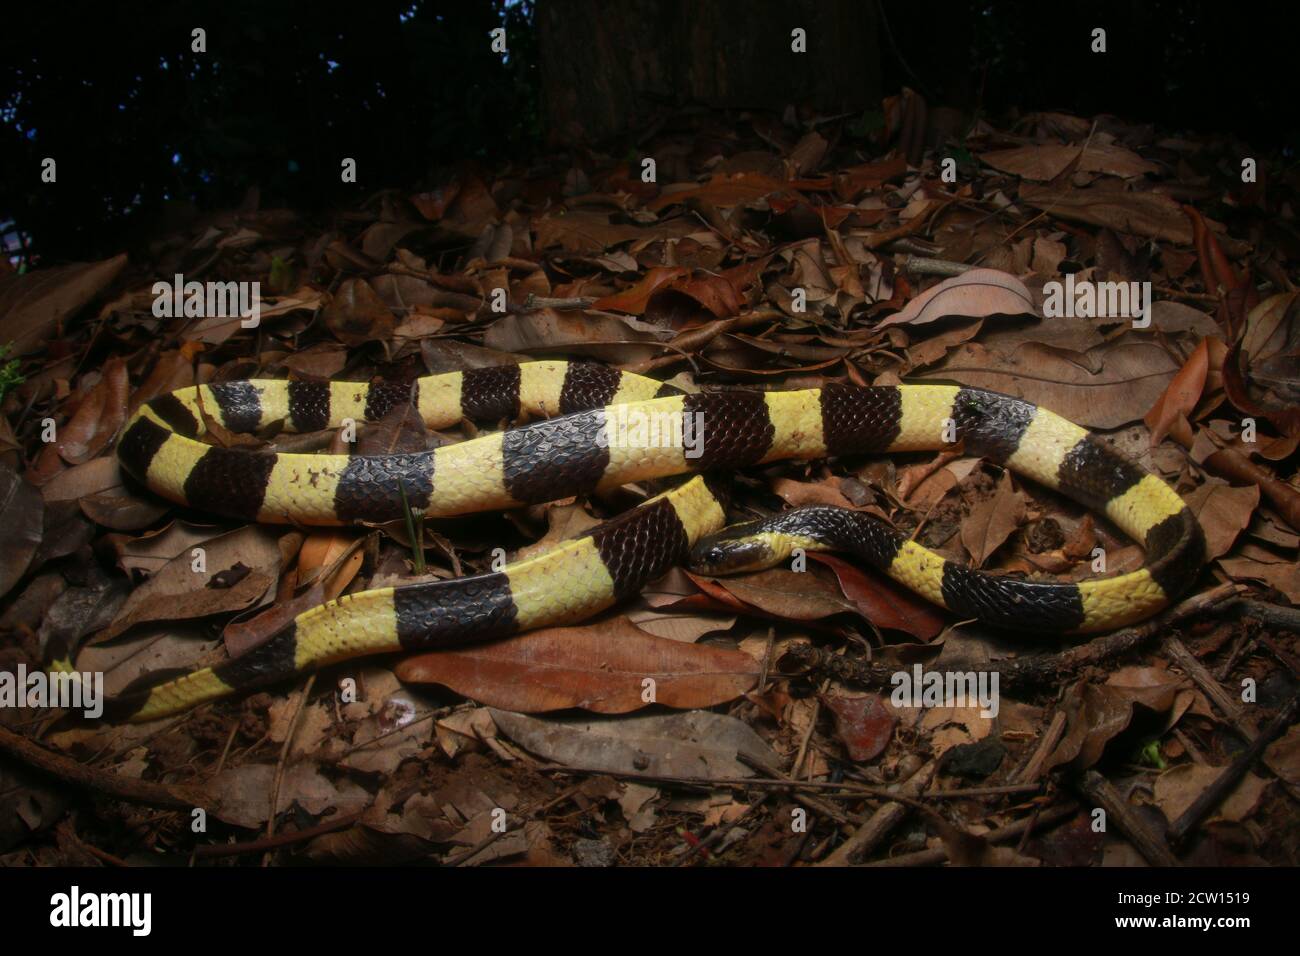 Bungarus fasciatus è un serpente velenoso proveniente dal Sud-Est asiatico. Essi sono normalmente trovati in palma di olio di palma. Foto Stock